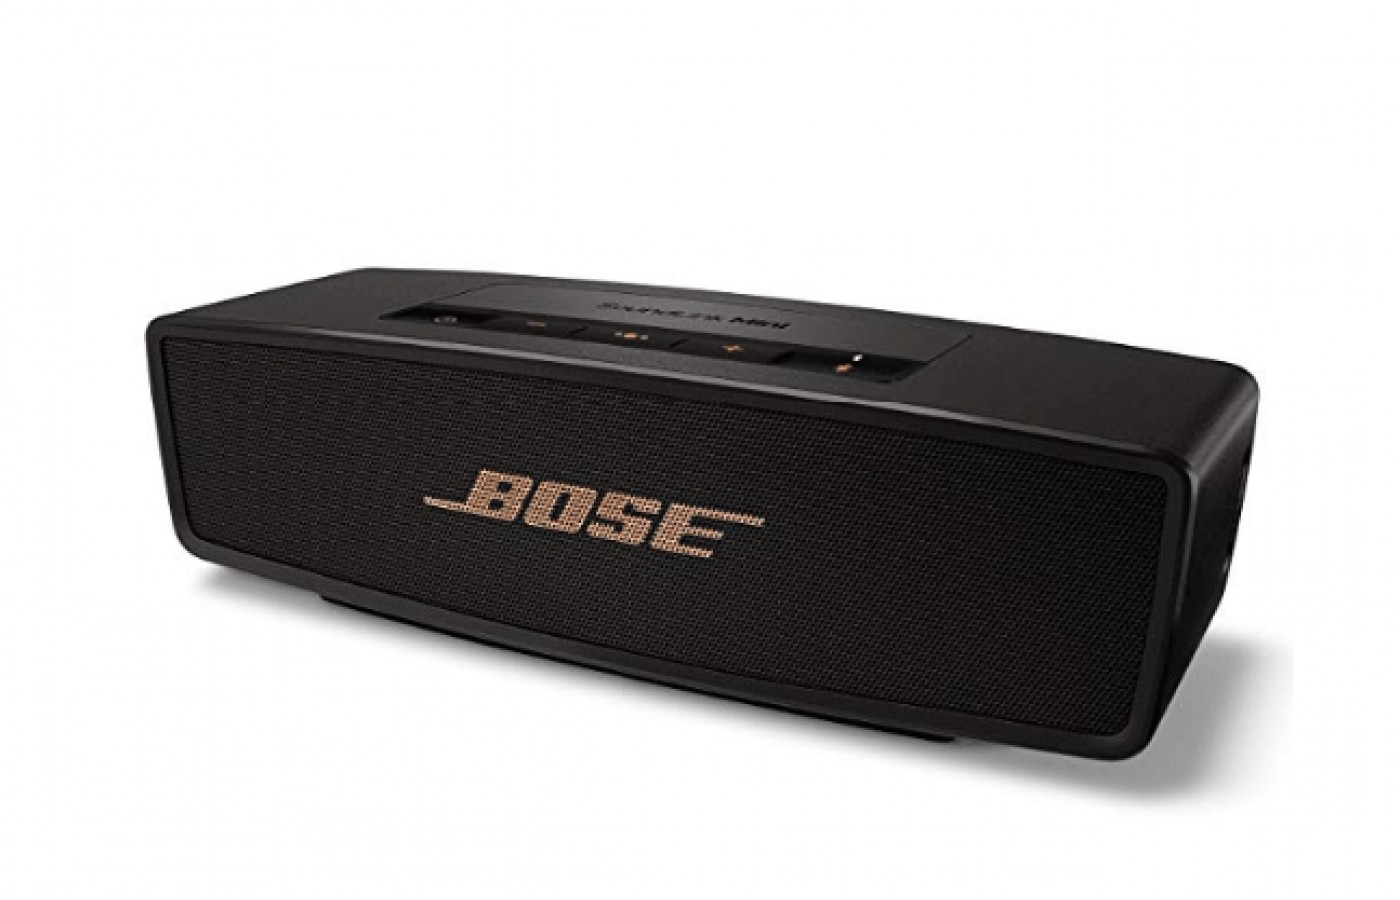 Bose SoundLink Mini Reviewed GearWeAre